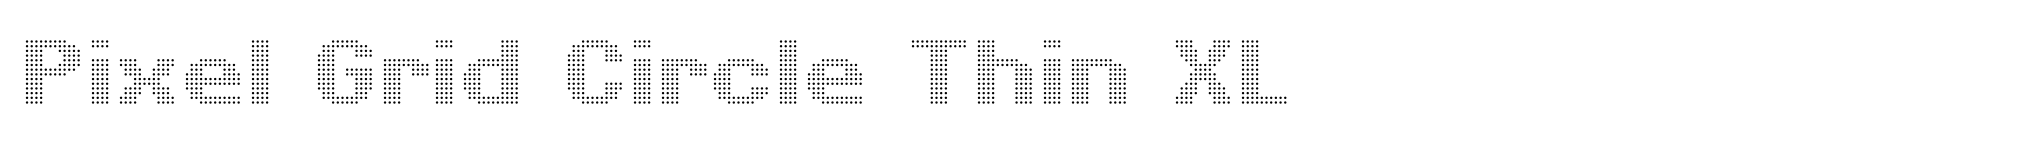 Pixel Grid Circle Thin XL image